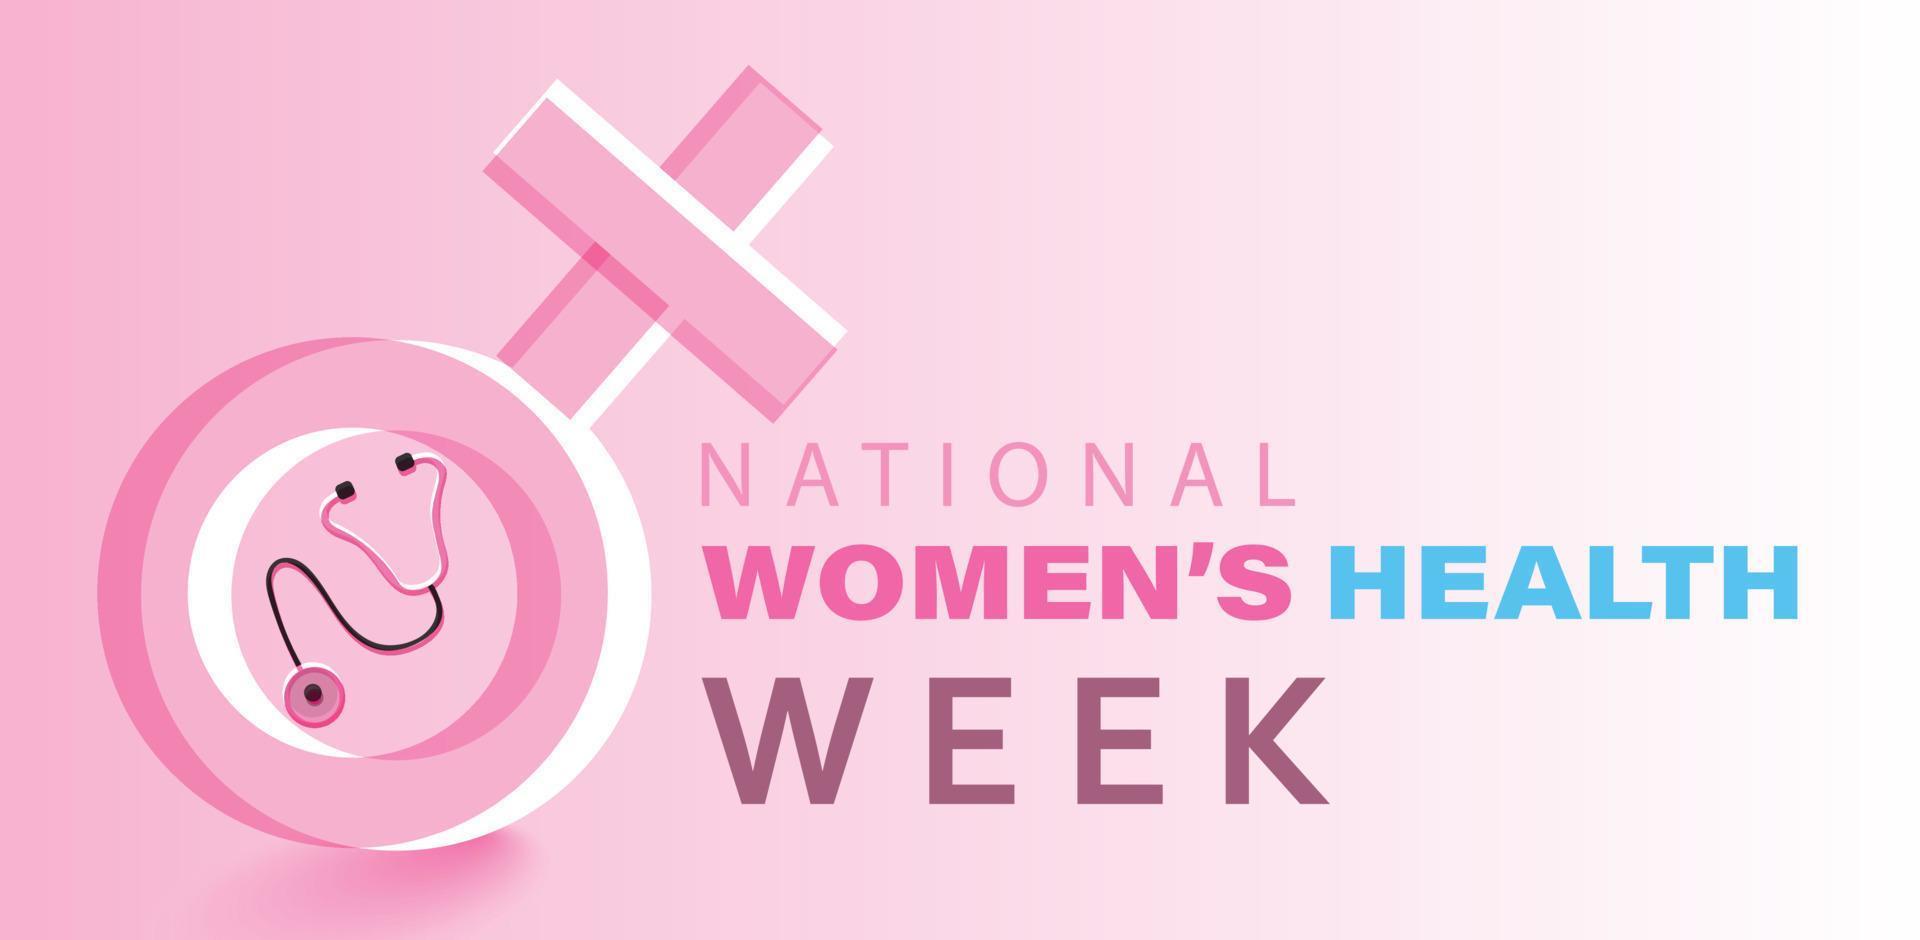 mei is nationaal vrouwen Gezondheid week. sjabloon voor achtergrond, banier, kaart, poster. vector illustratie.